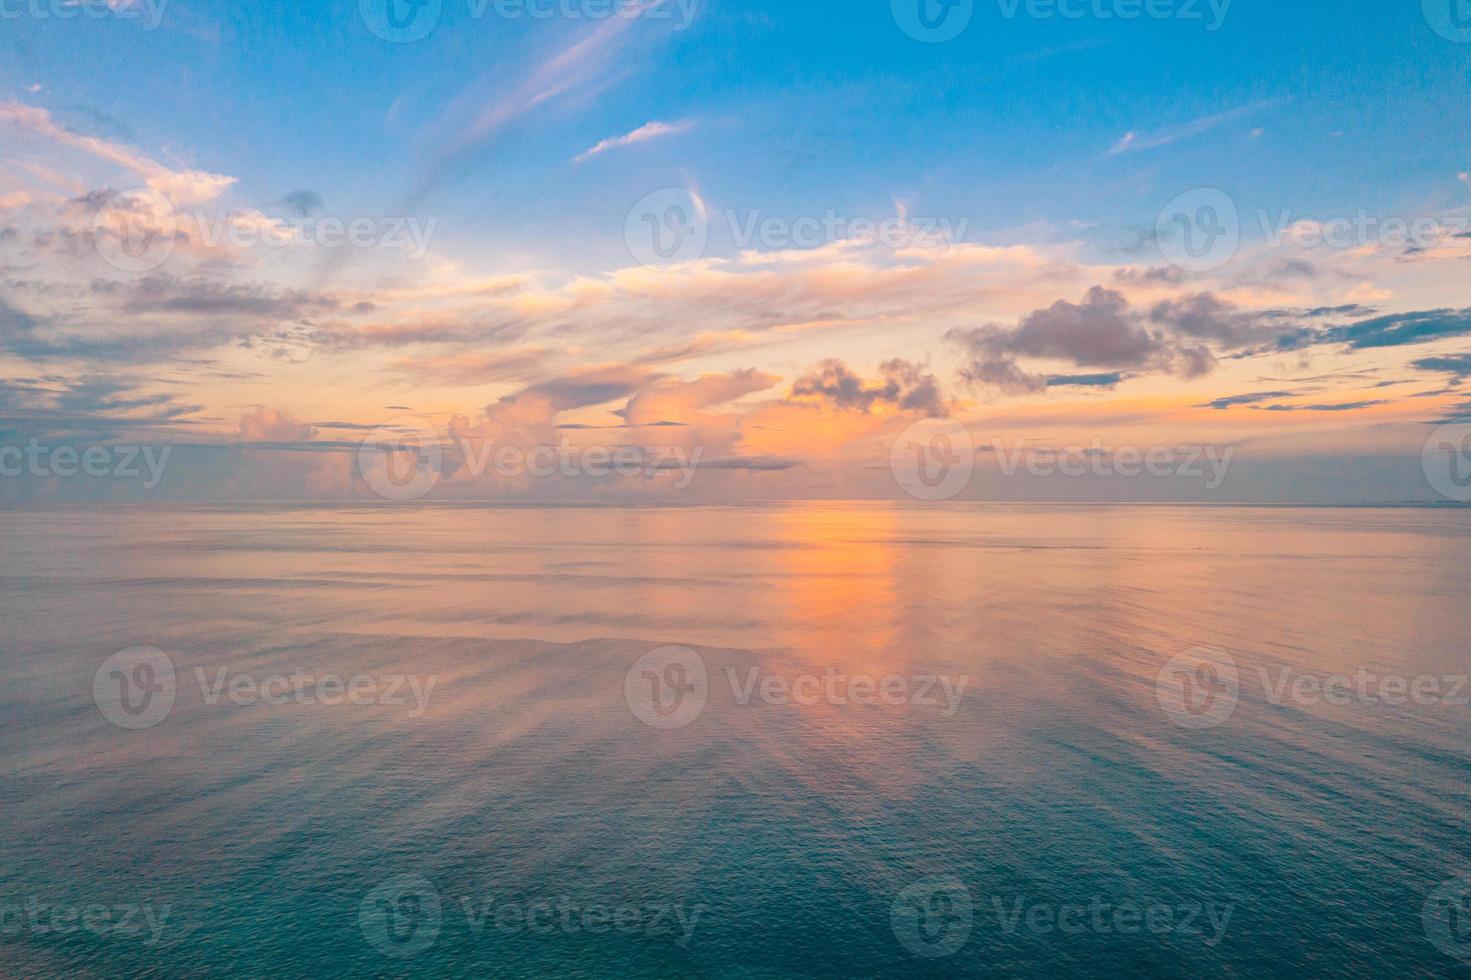 vue panoramique aérienne du coucher de soleil sur l'océan. ciel coloré, nuages et eau. belle scène sereine, horizon océanique relaxant photo